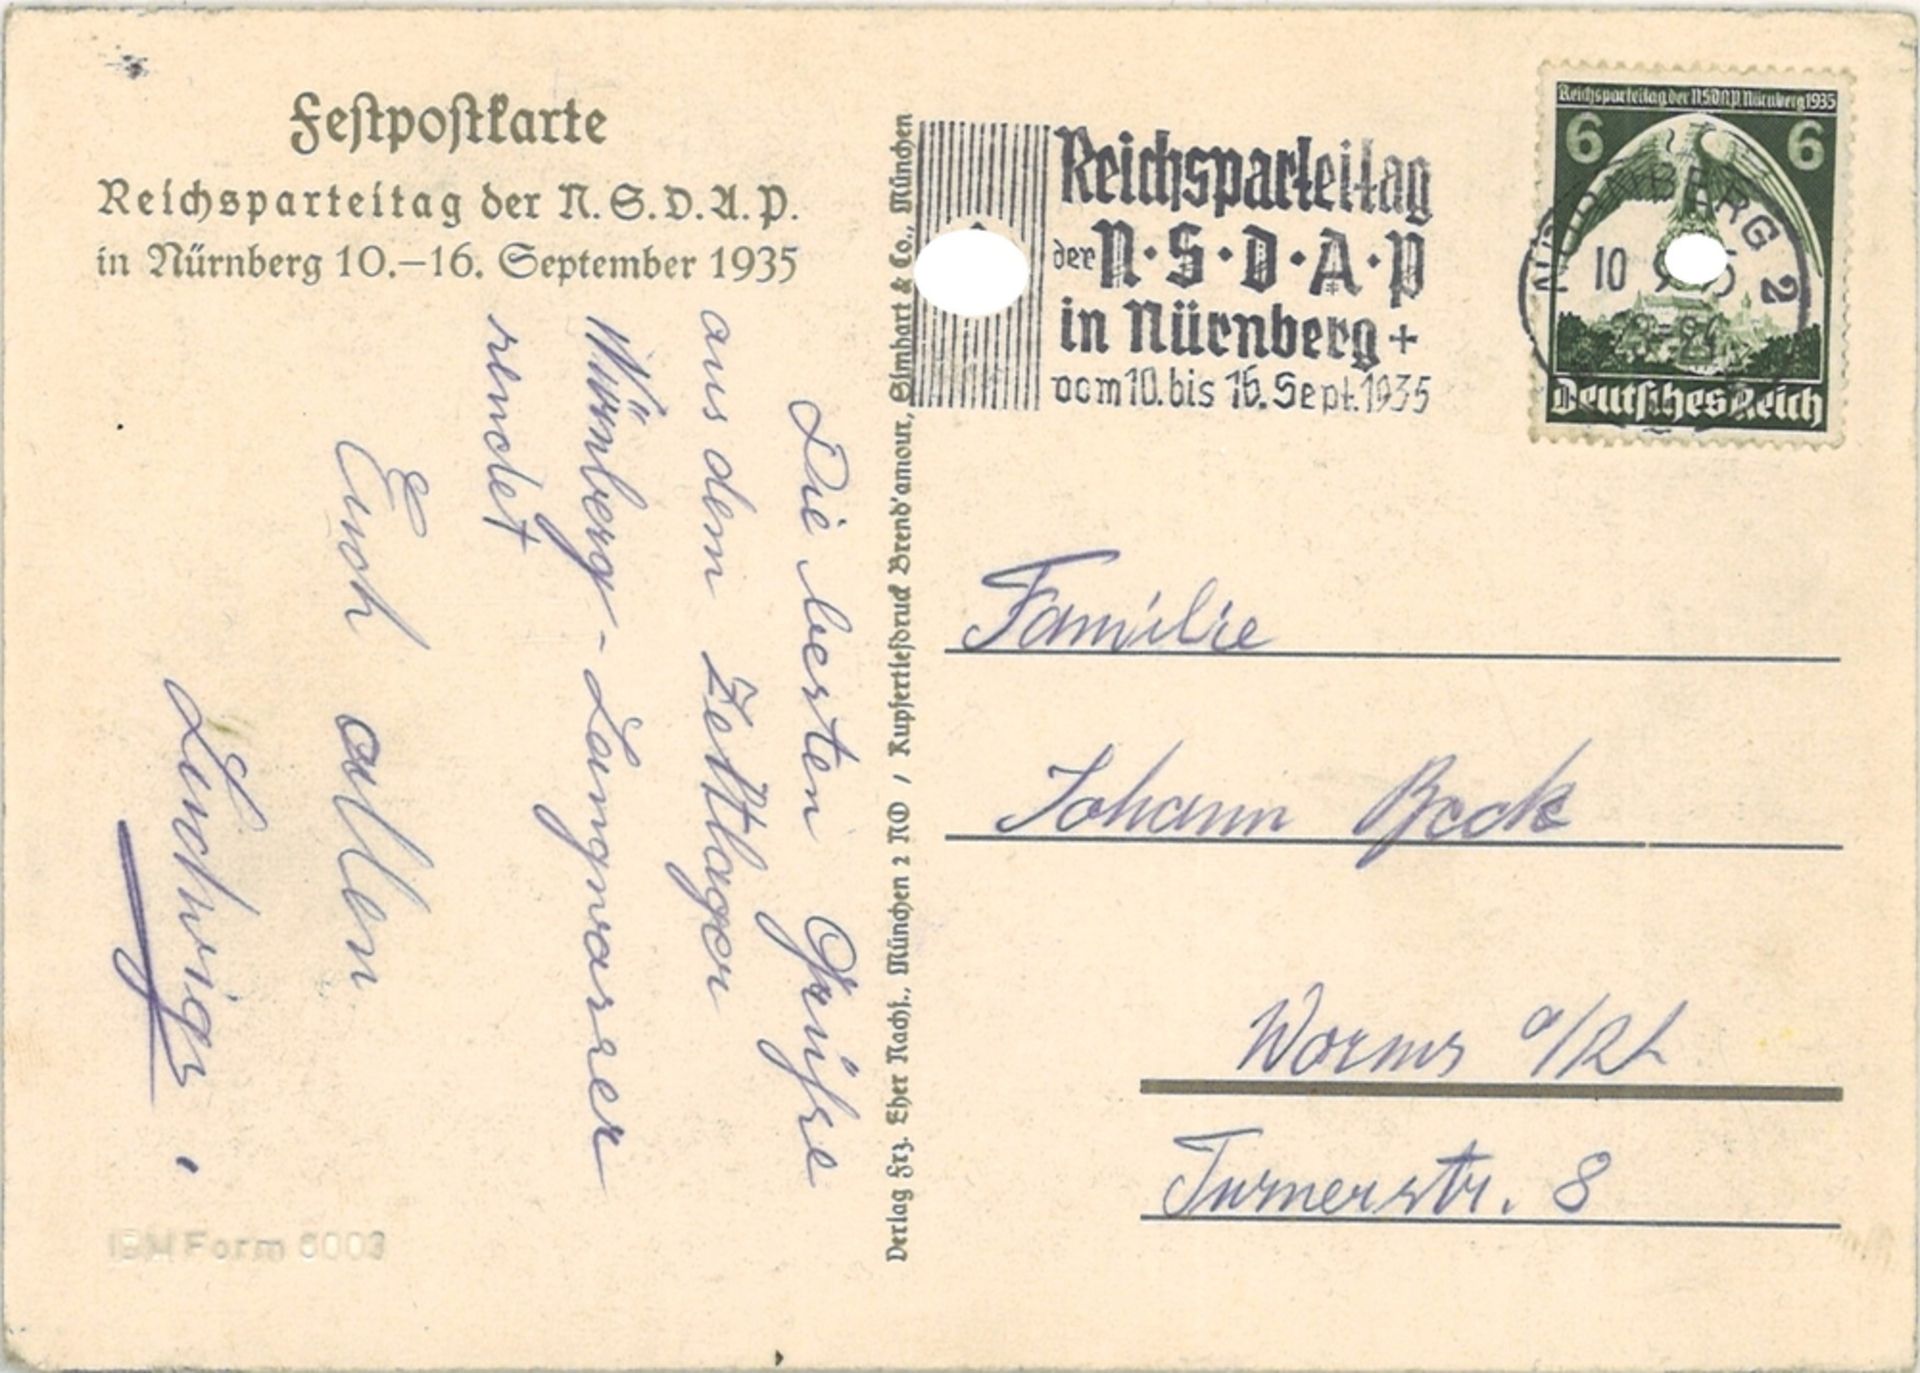 Festpostkarte Reichsparteitag Nürnberg 1935, SA/Hitler/SS Sonderwerbestempel Nürnberg - Bild 2 aus 2